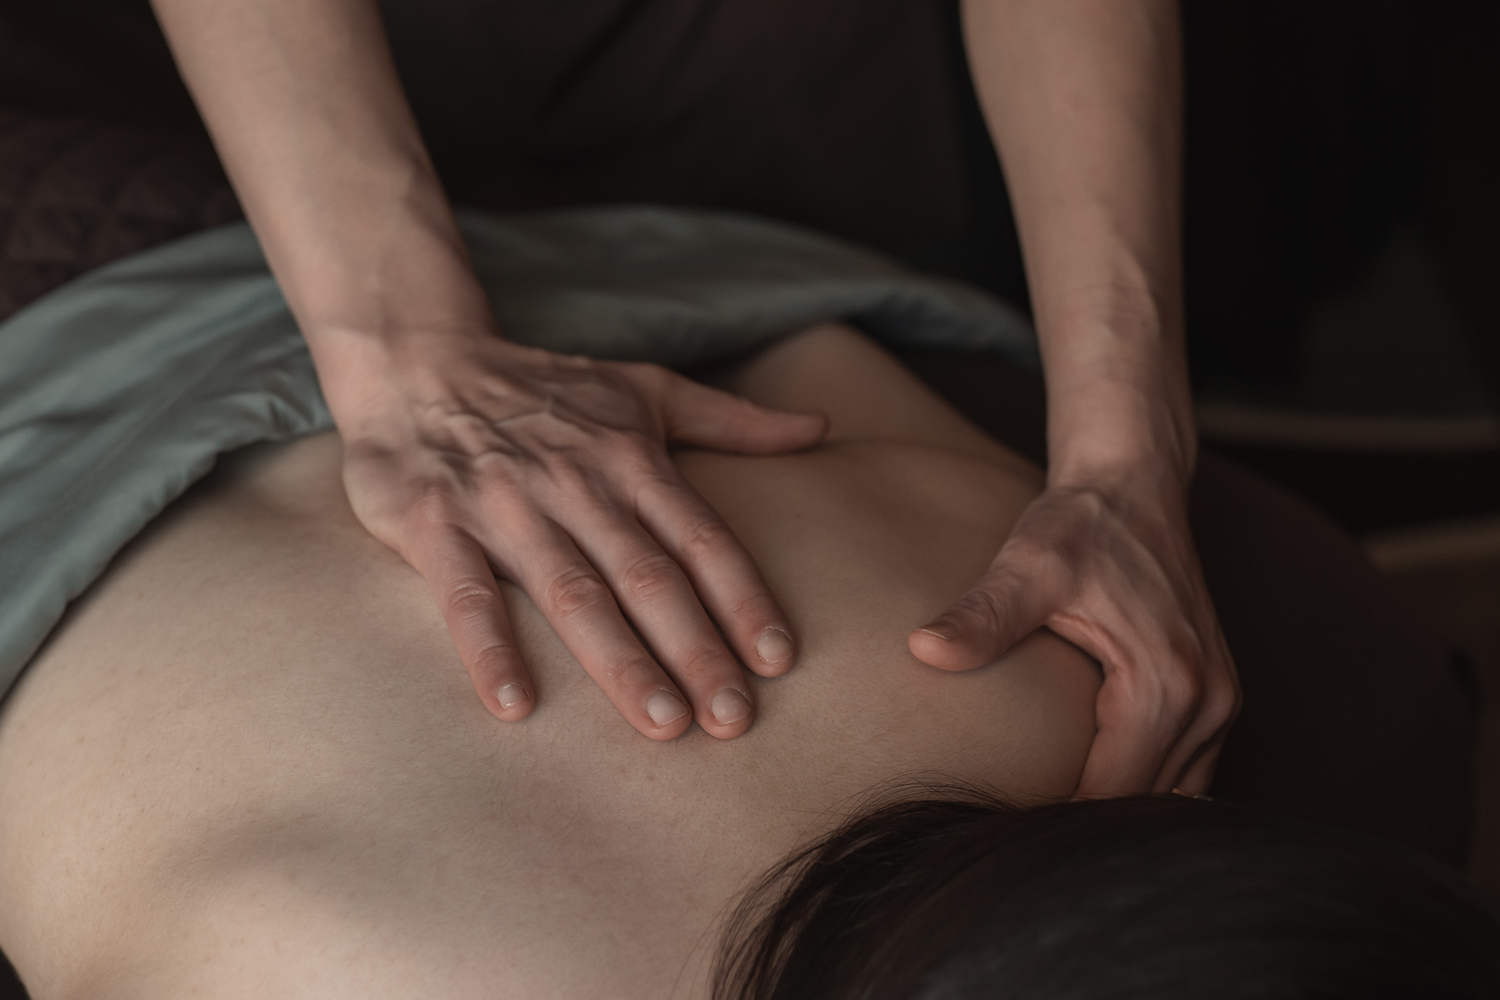 Massage detail 3